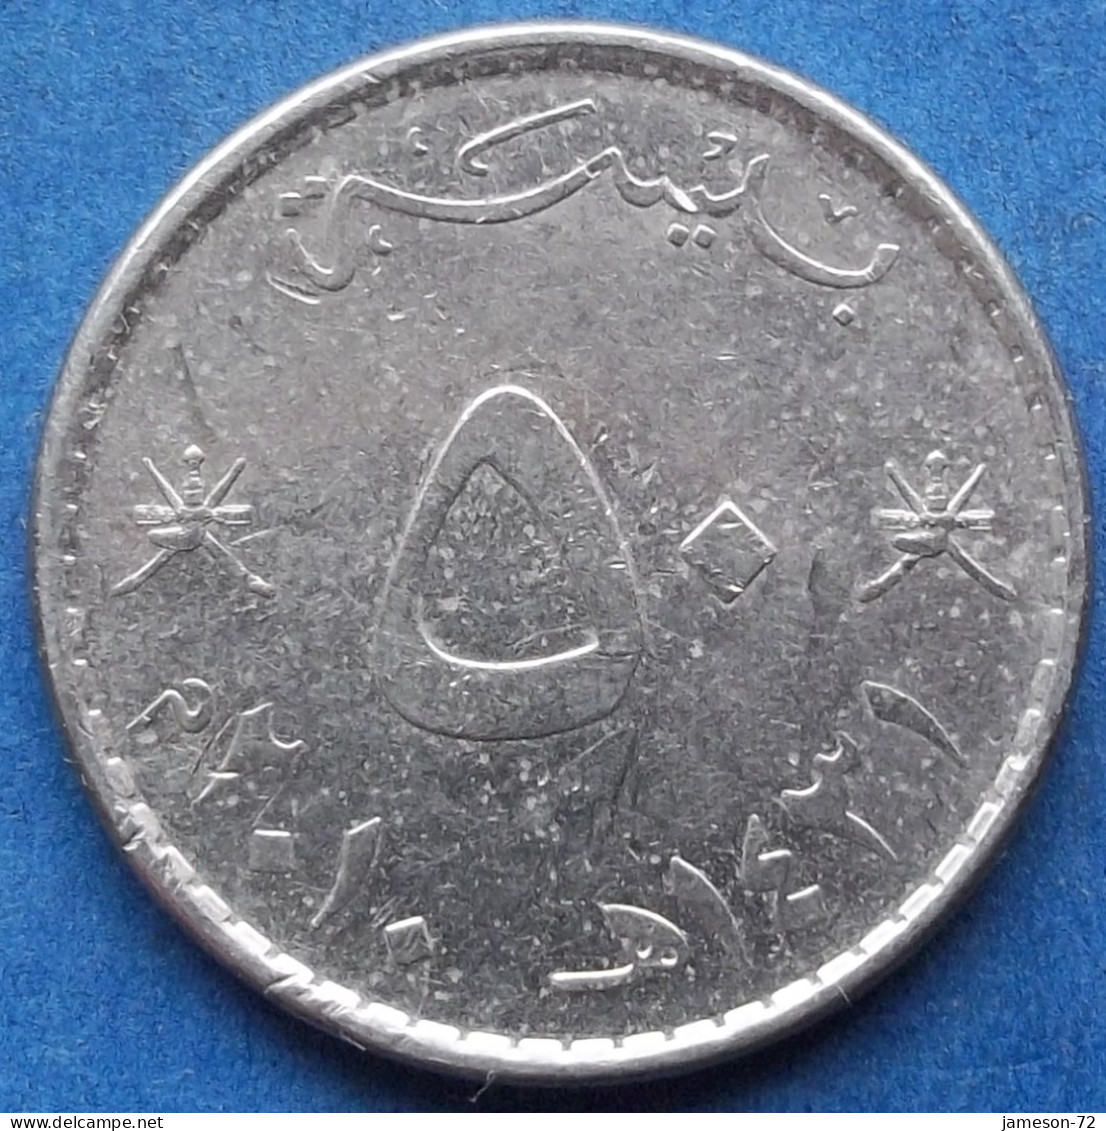 OMAN - 50 Baisa AH1431 2010AD KM# 153a Sultan Quabus Bin Sa'id Reform Coinage (1972) - Edelweiss Coins - Omán